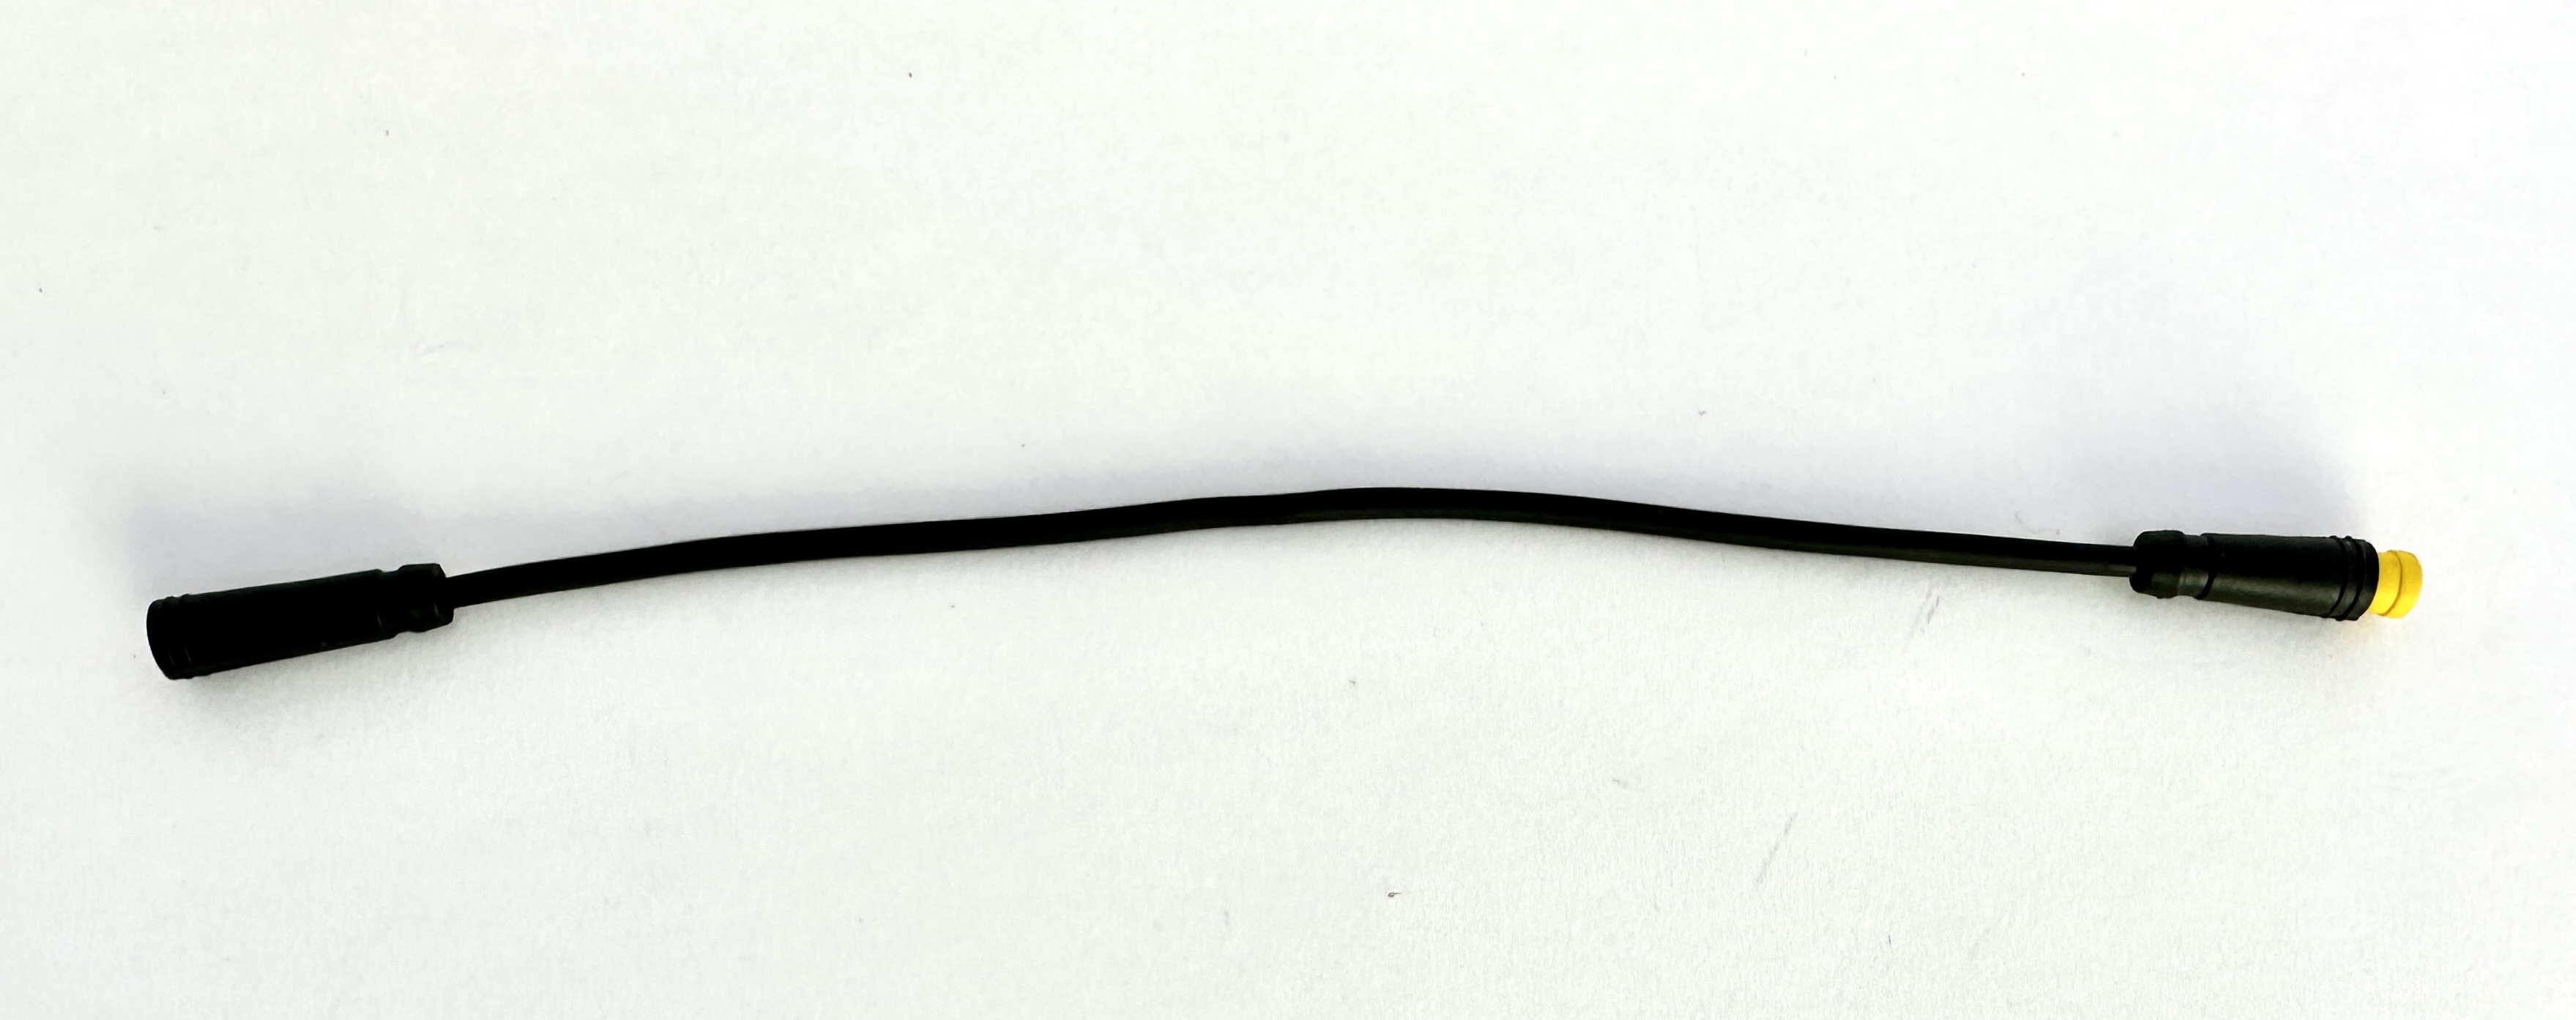 HIGO / Julet Adapterkabel 19,5 cm für Ebike, 2 PIN rot auf 3 PIN gelb